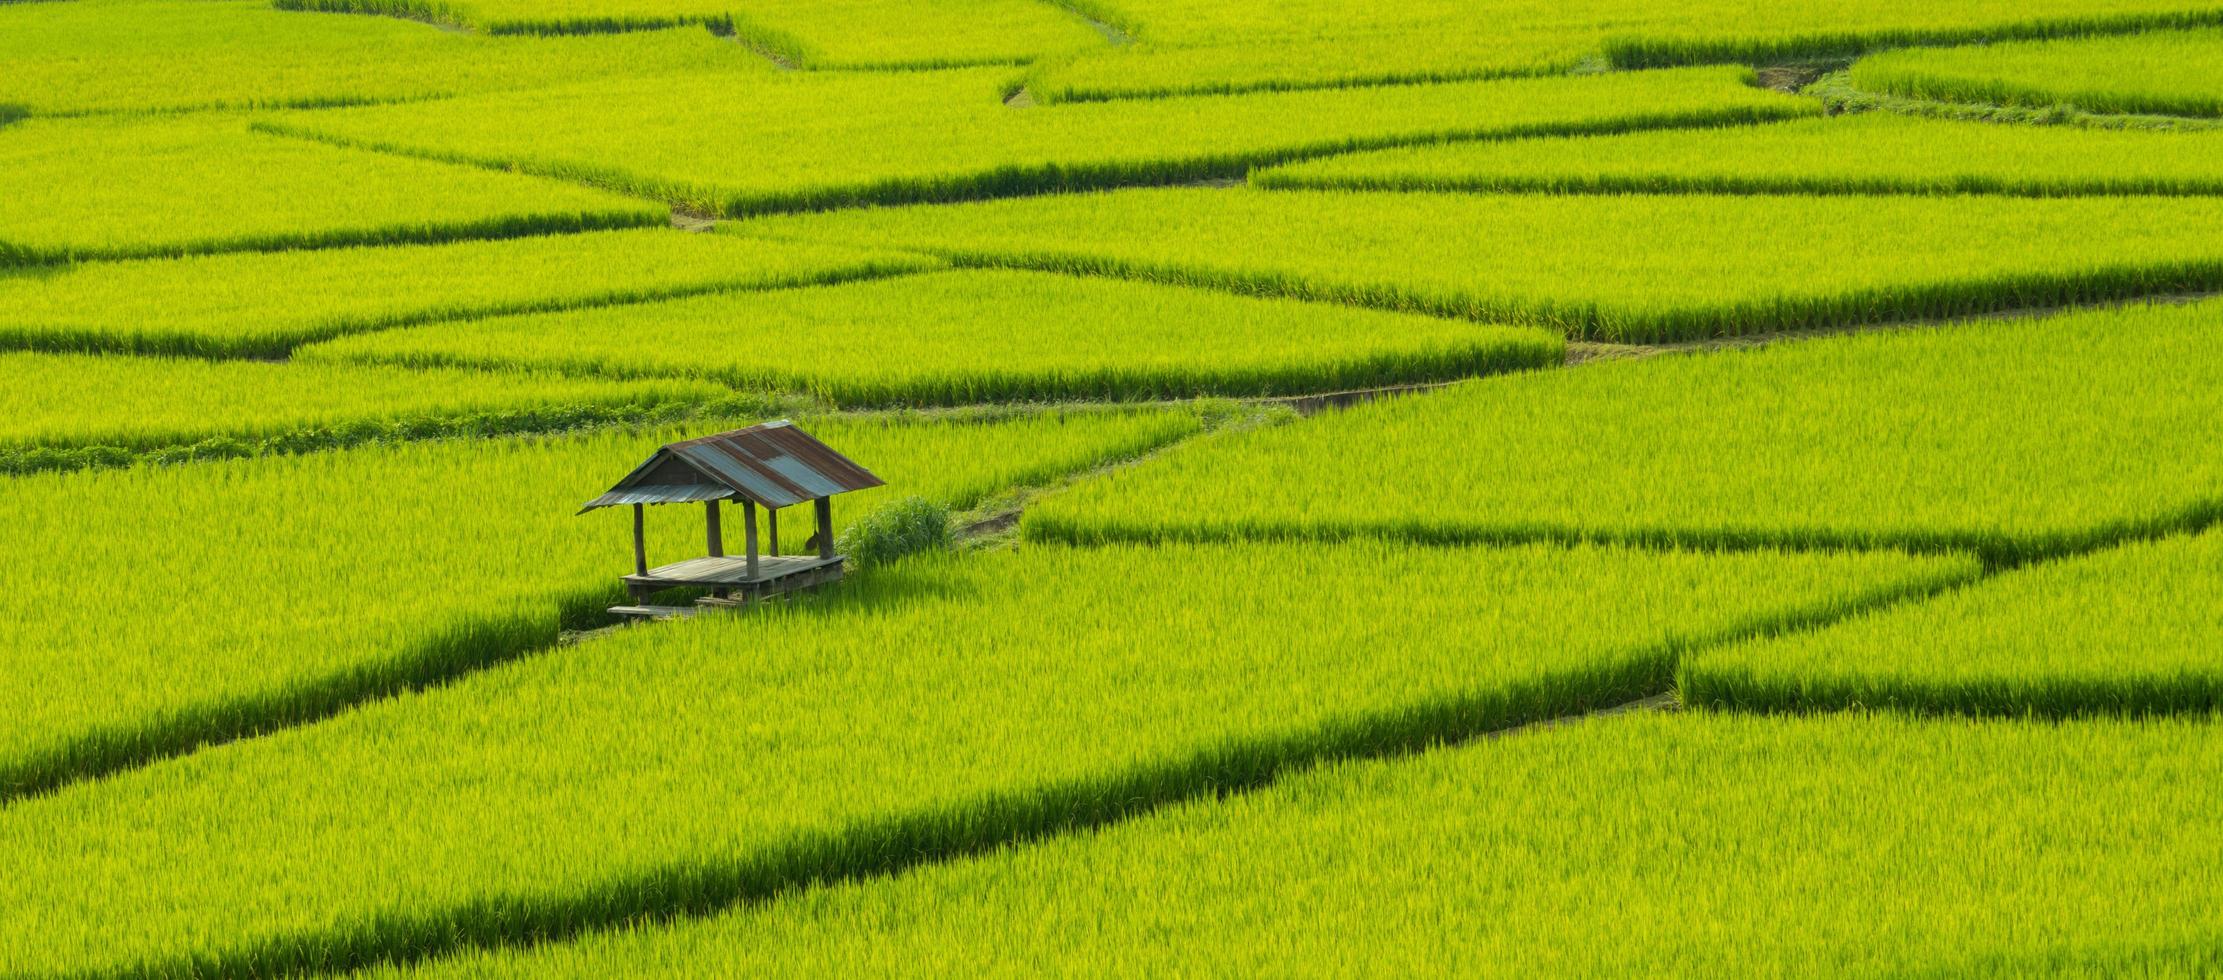 groene rijstvelden in het regenseizoen prachtige natuur foto